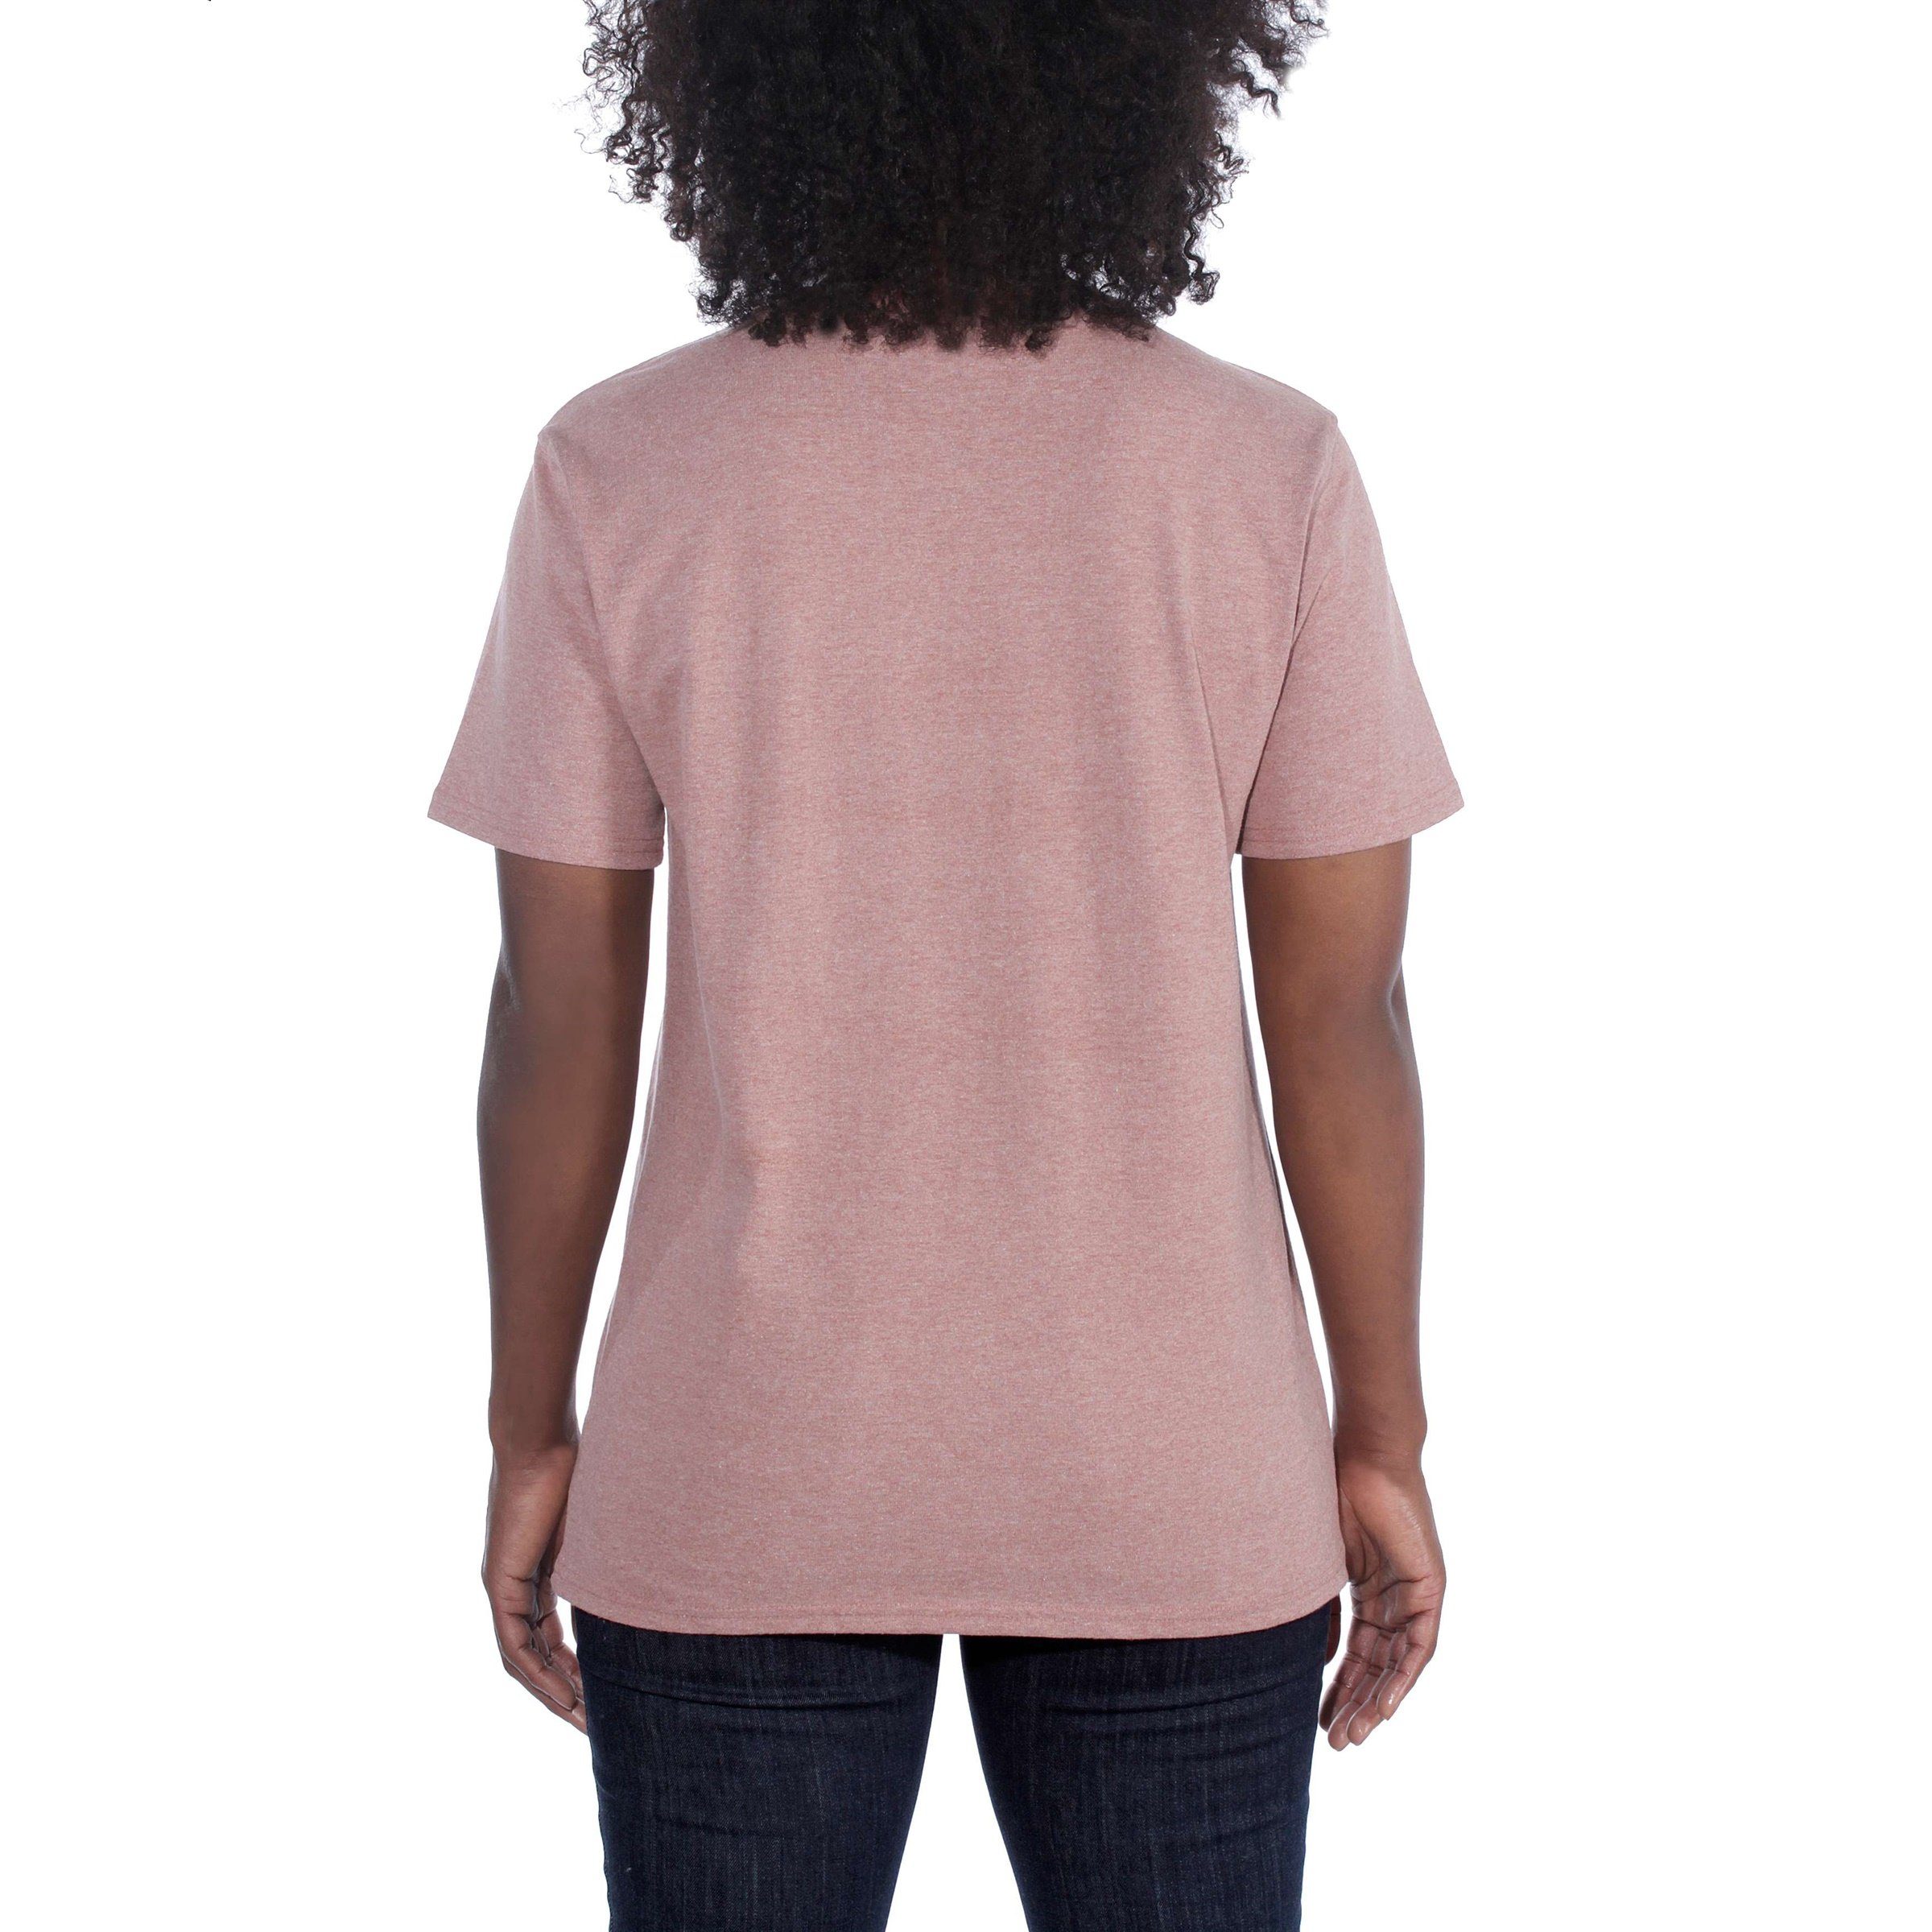 T-Shirt Fit T-Shirt Adult Short-Sleeve Pocket Carhartt Loose heather Carhartt Damen Heavyweight hibiscus